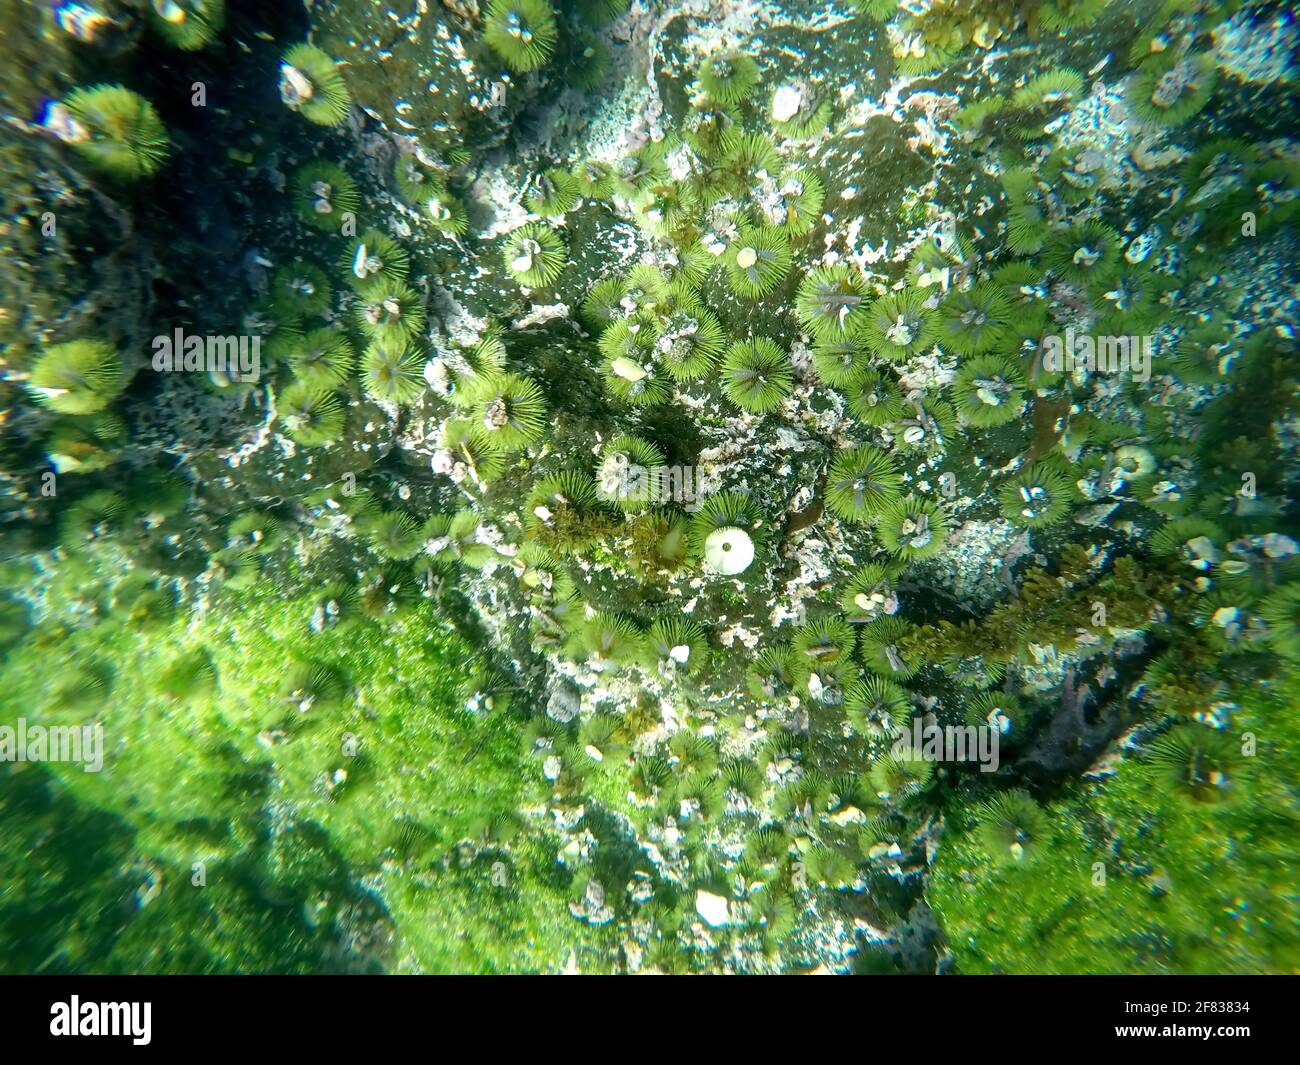 Green sea urchin with shells stuck to it at Punta Espinoza, Fernandina Island, Galapagos, Ecuador Stock Photo